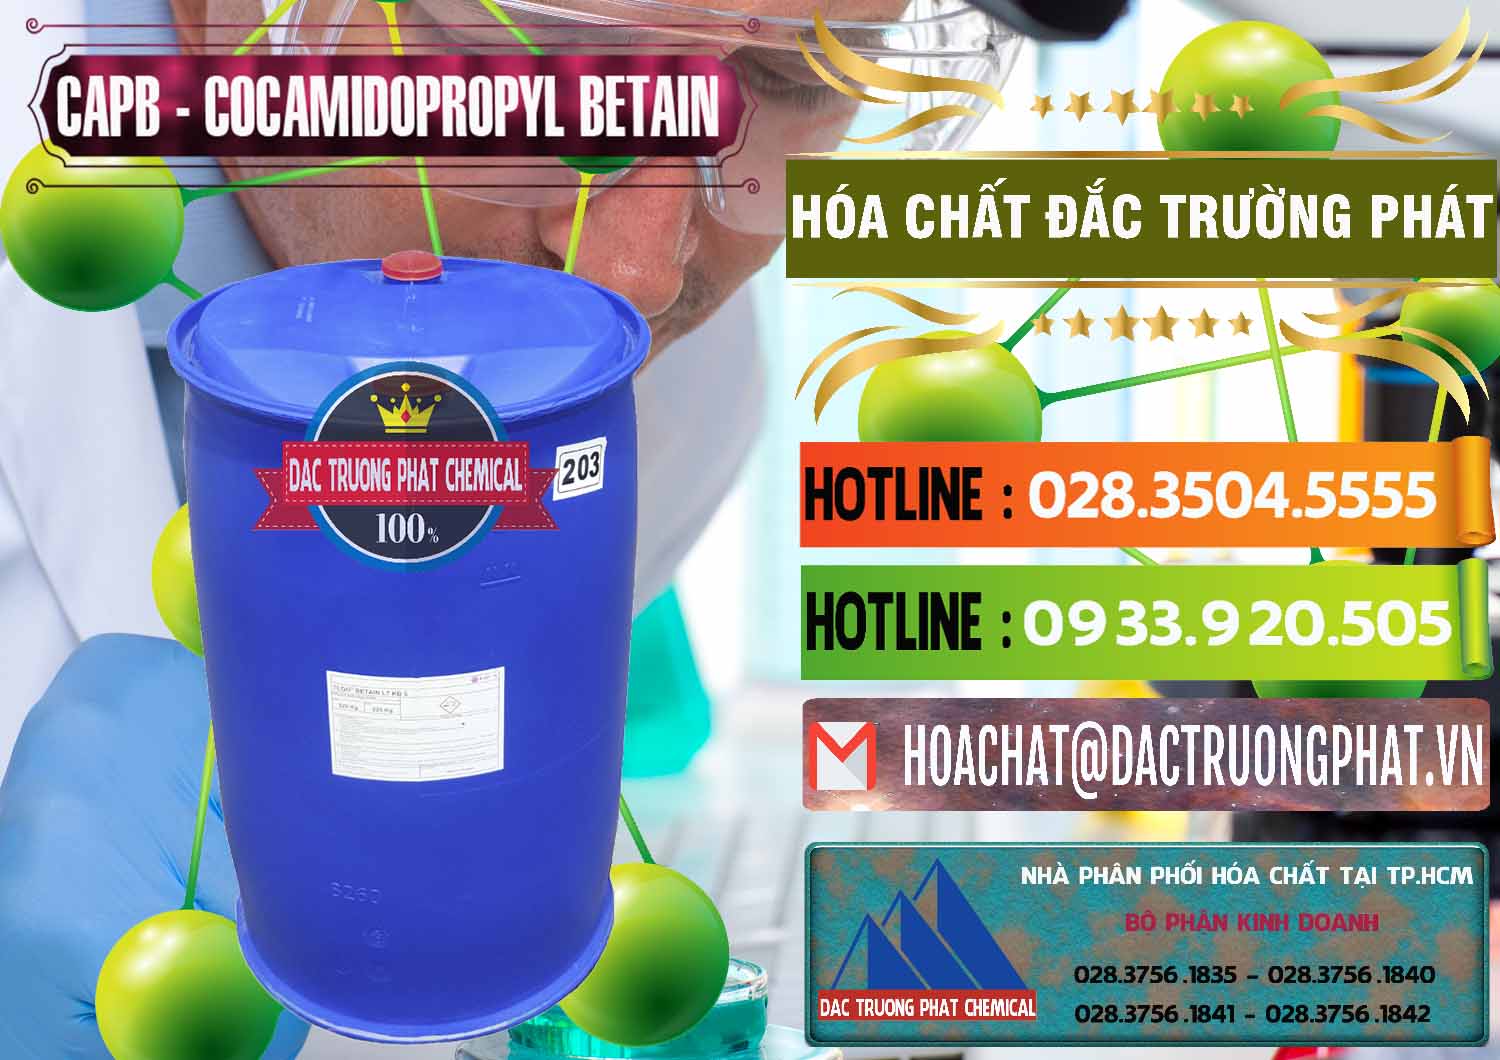 Nơi chuyên bán _ phân phối Cocamidopropyl Betaine - CAPB Tego Indonesia - 0327 - Cty nhập khẩu - phân phối hóa chất tại TP.HCM - cungcaphoachat.com.vn